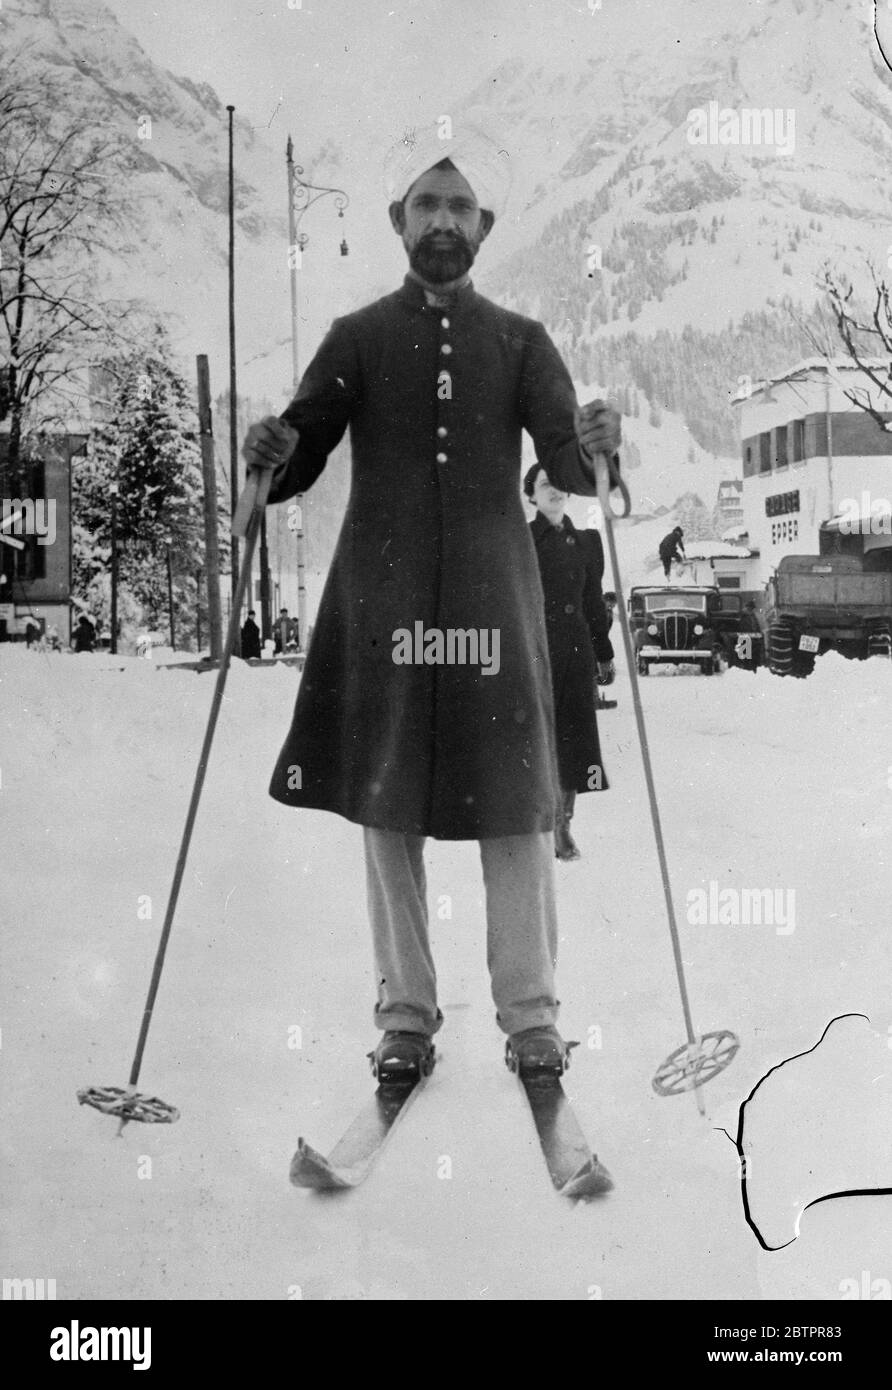 Turban und Ski in der Schweiz. Der Turban ist für die glühenden Sonnen Indiens passender als die schneebedeckten Höhen der Schweiz, aber in diesem Bild behält Mueenddin Chulan aus Lahore, Indien, die ihm eigentümliche Tracht seines Landes, als er sich auf den Skiern in den Engelberg aufmacht. 28. Januar 1938 Stockfoto